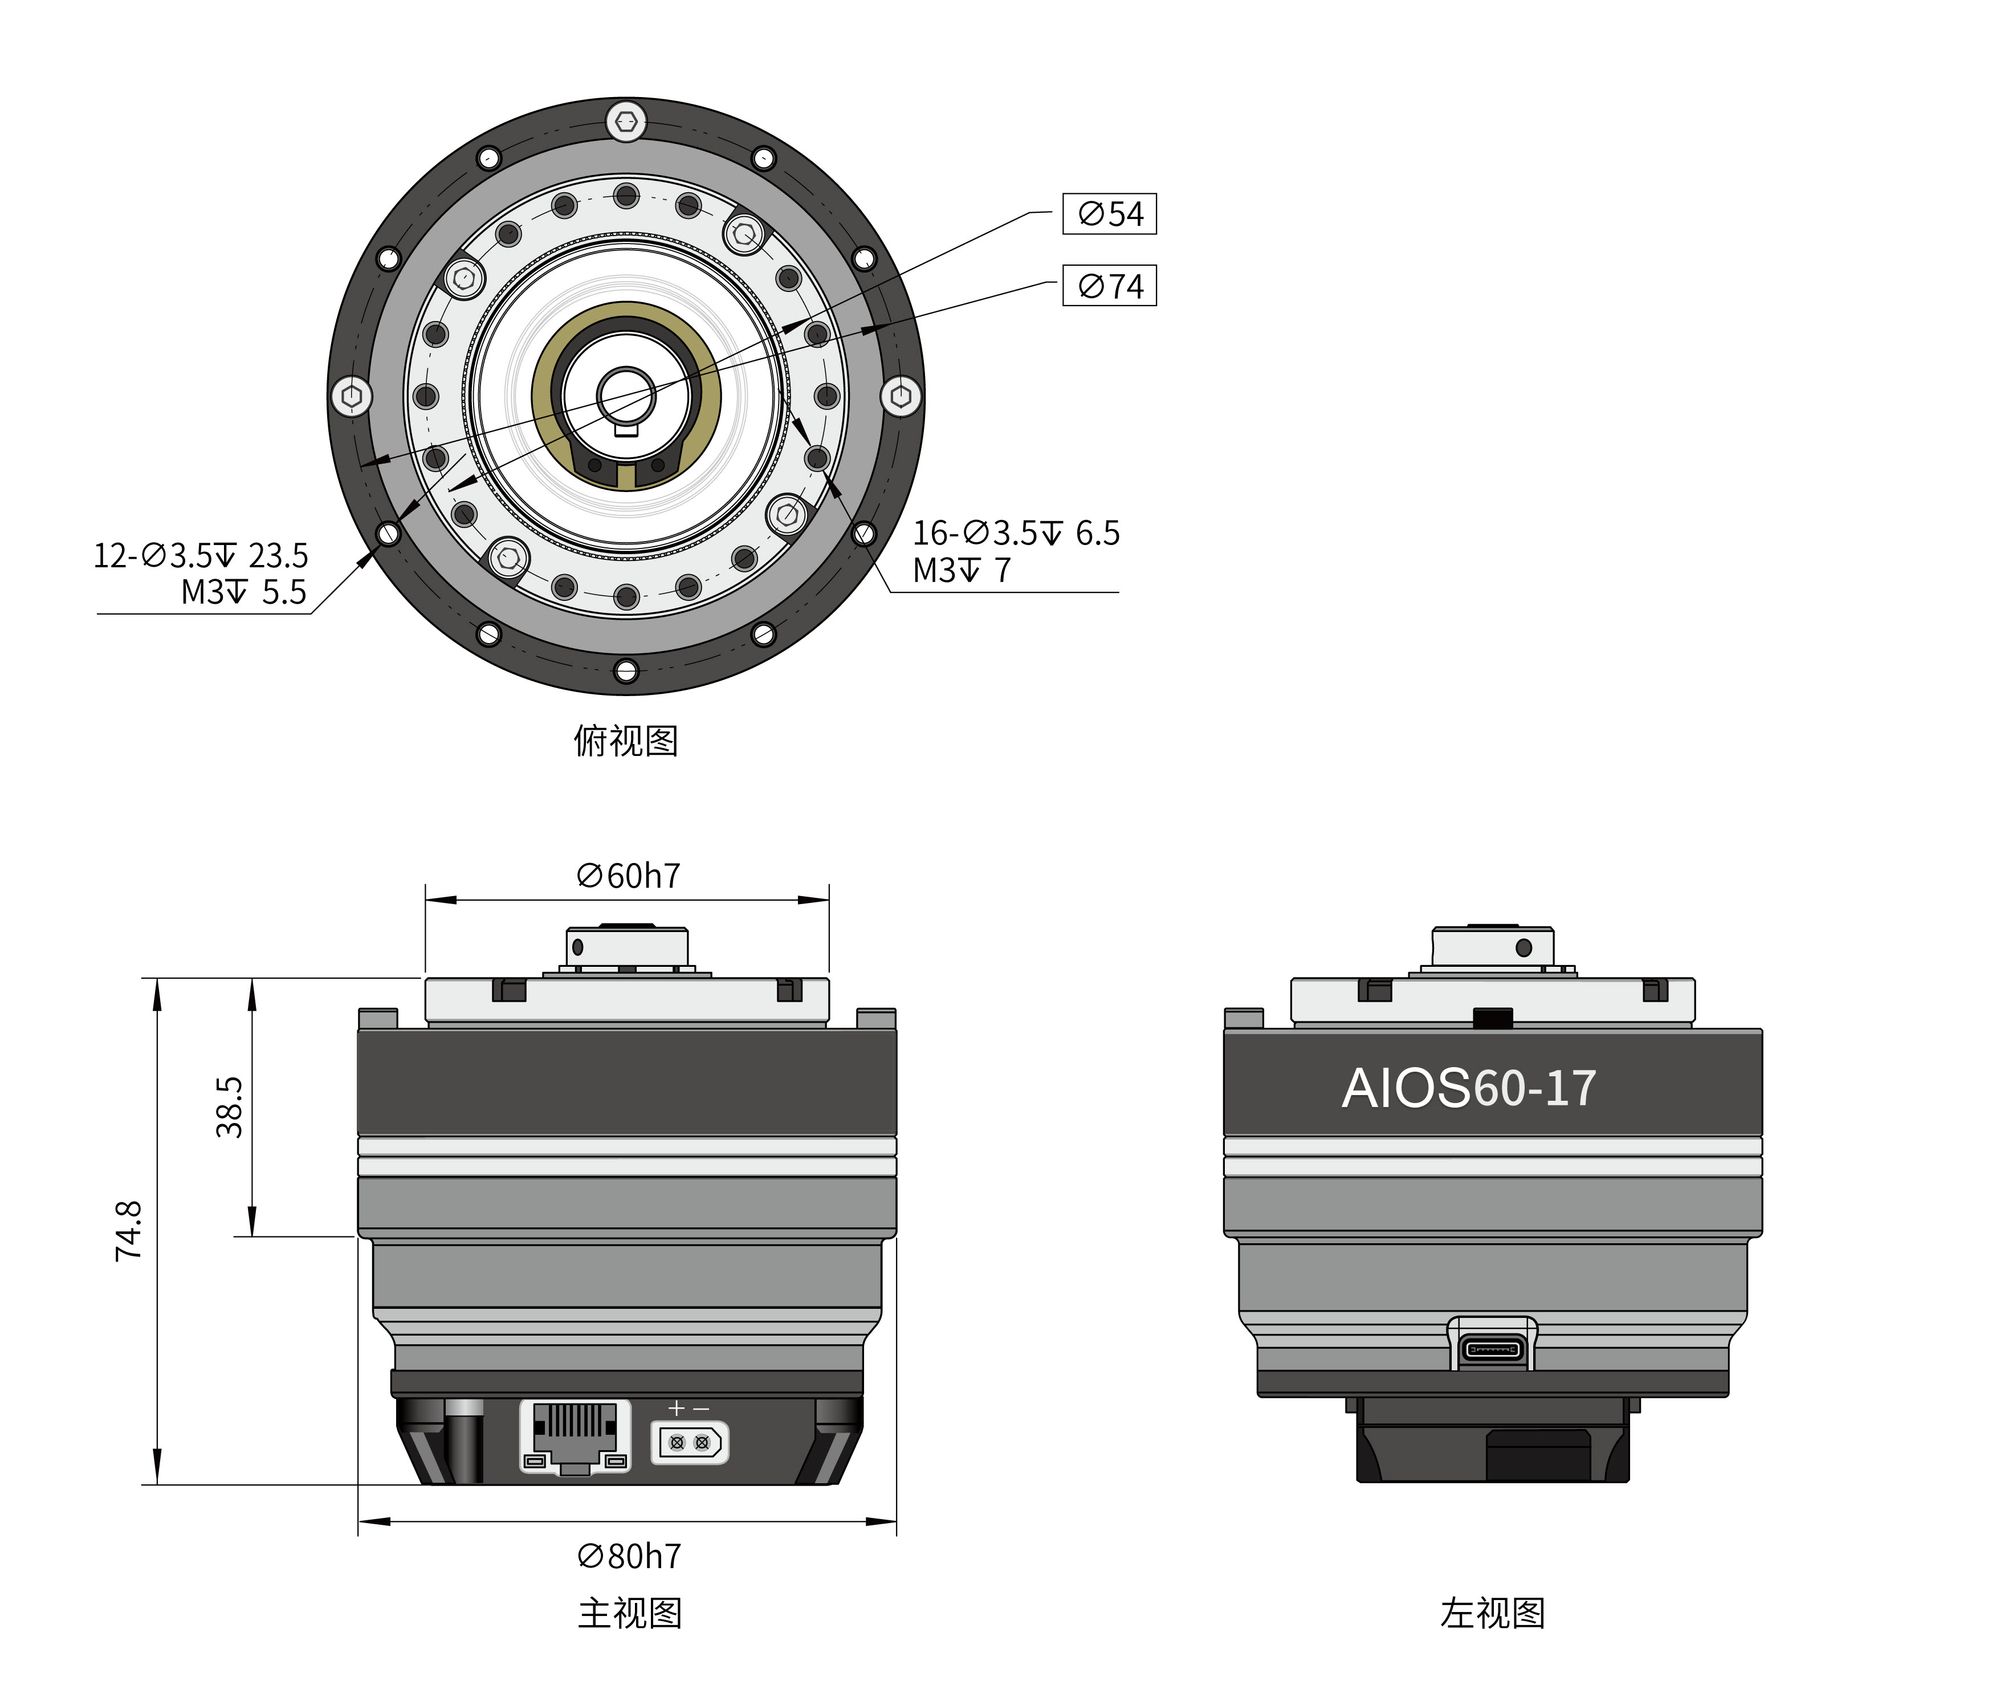 AIOS Series Precise Actuator - High Power & Torque Density